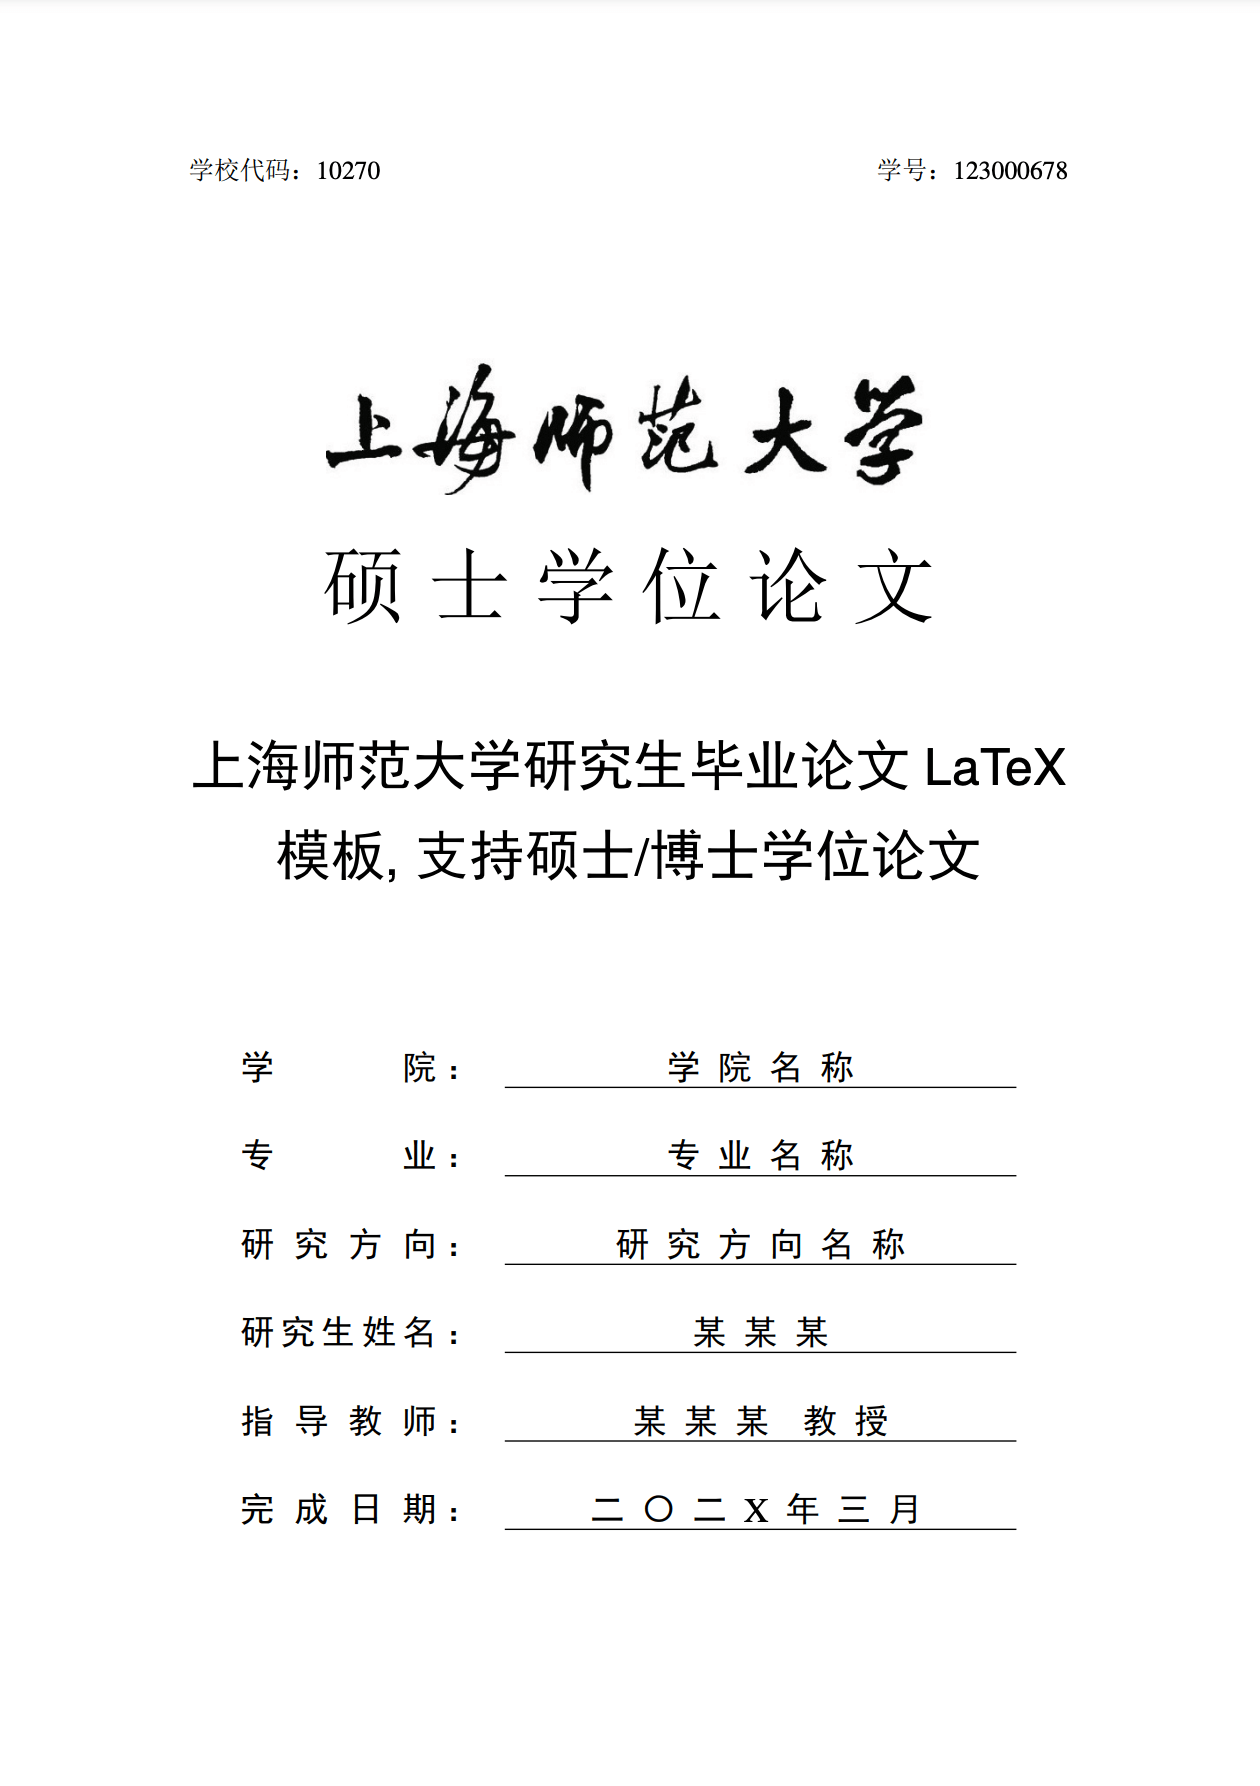 上海师范大学研究生毕业论文 LaTeX 模板